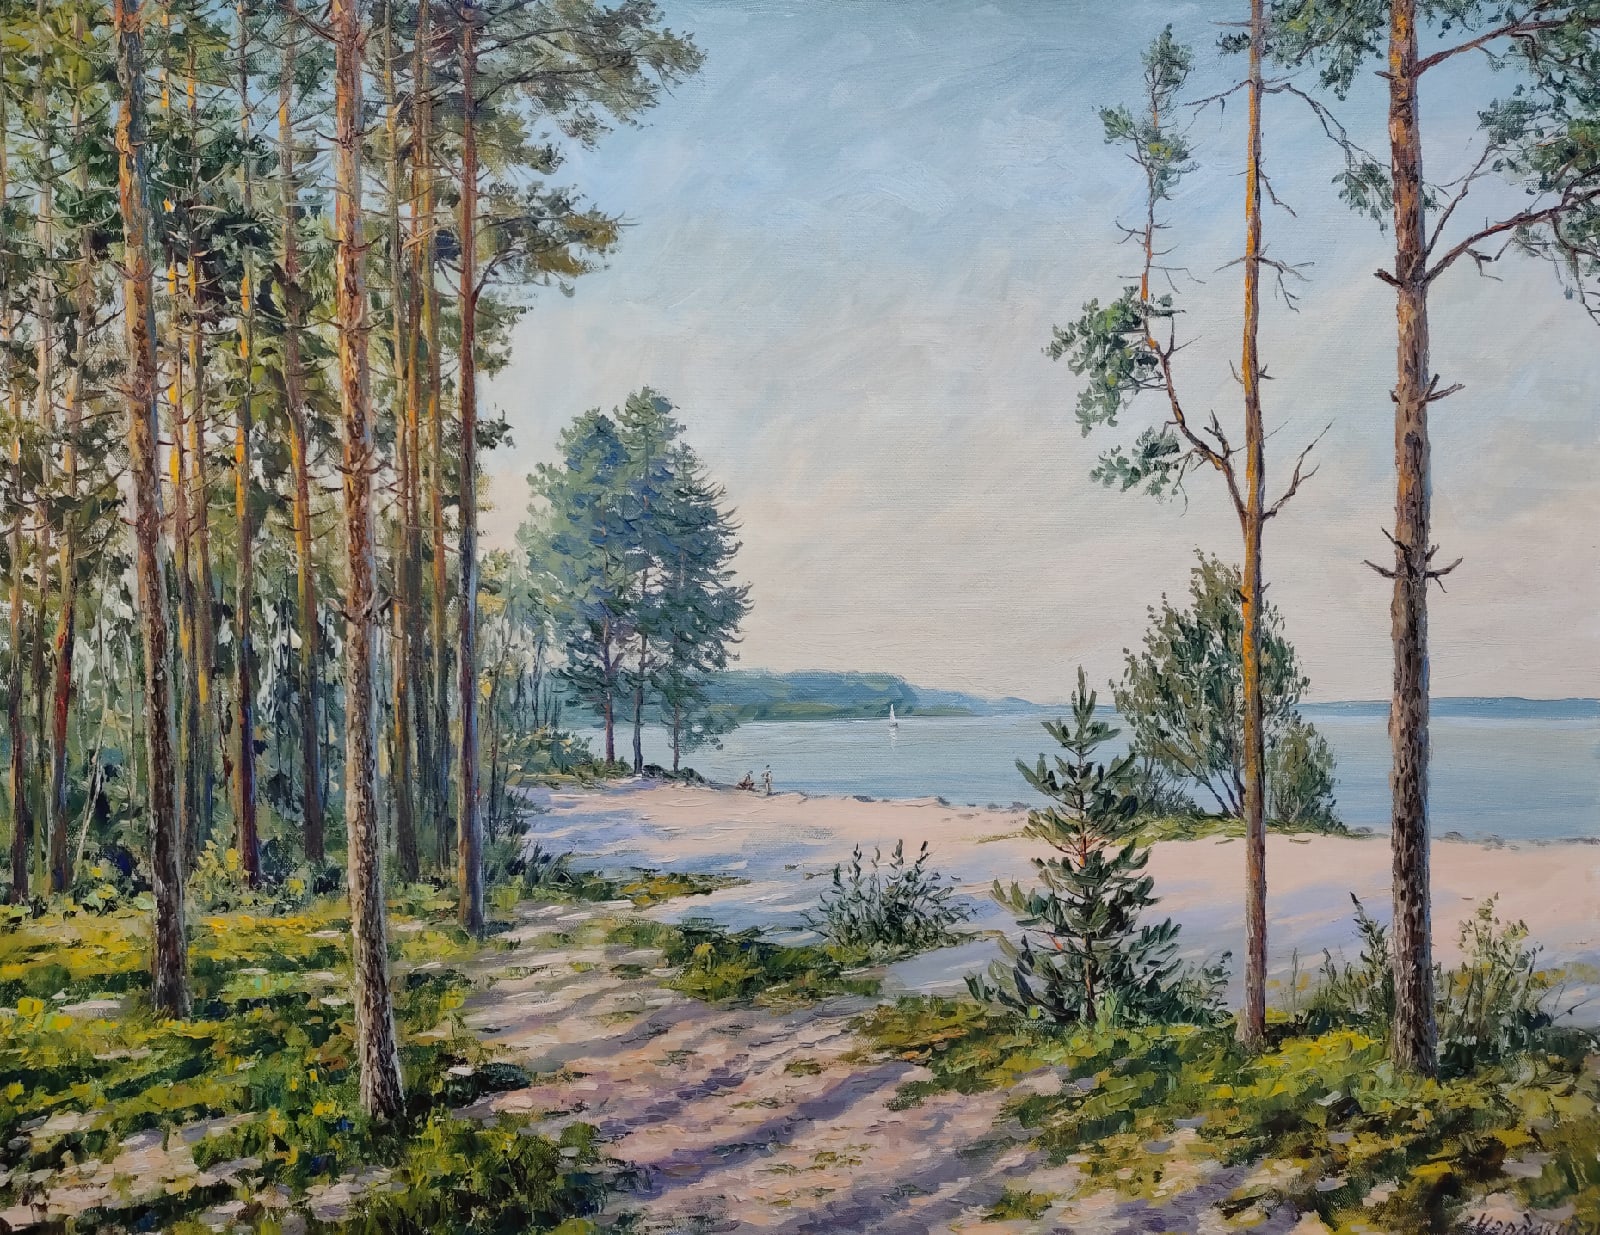 Rybinsk Seaside - 1, Vyacheslav Cherdakov, Buy the painting Oil